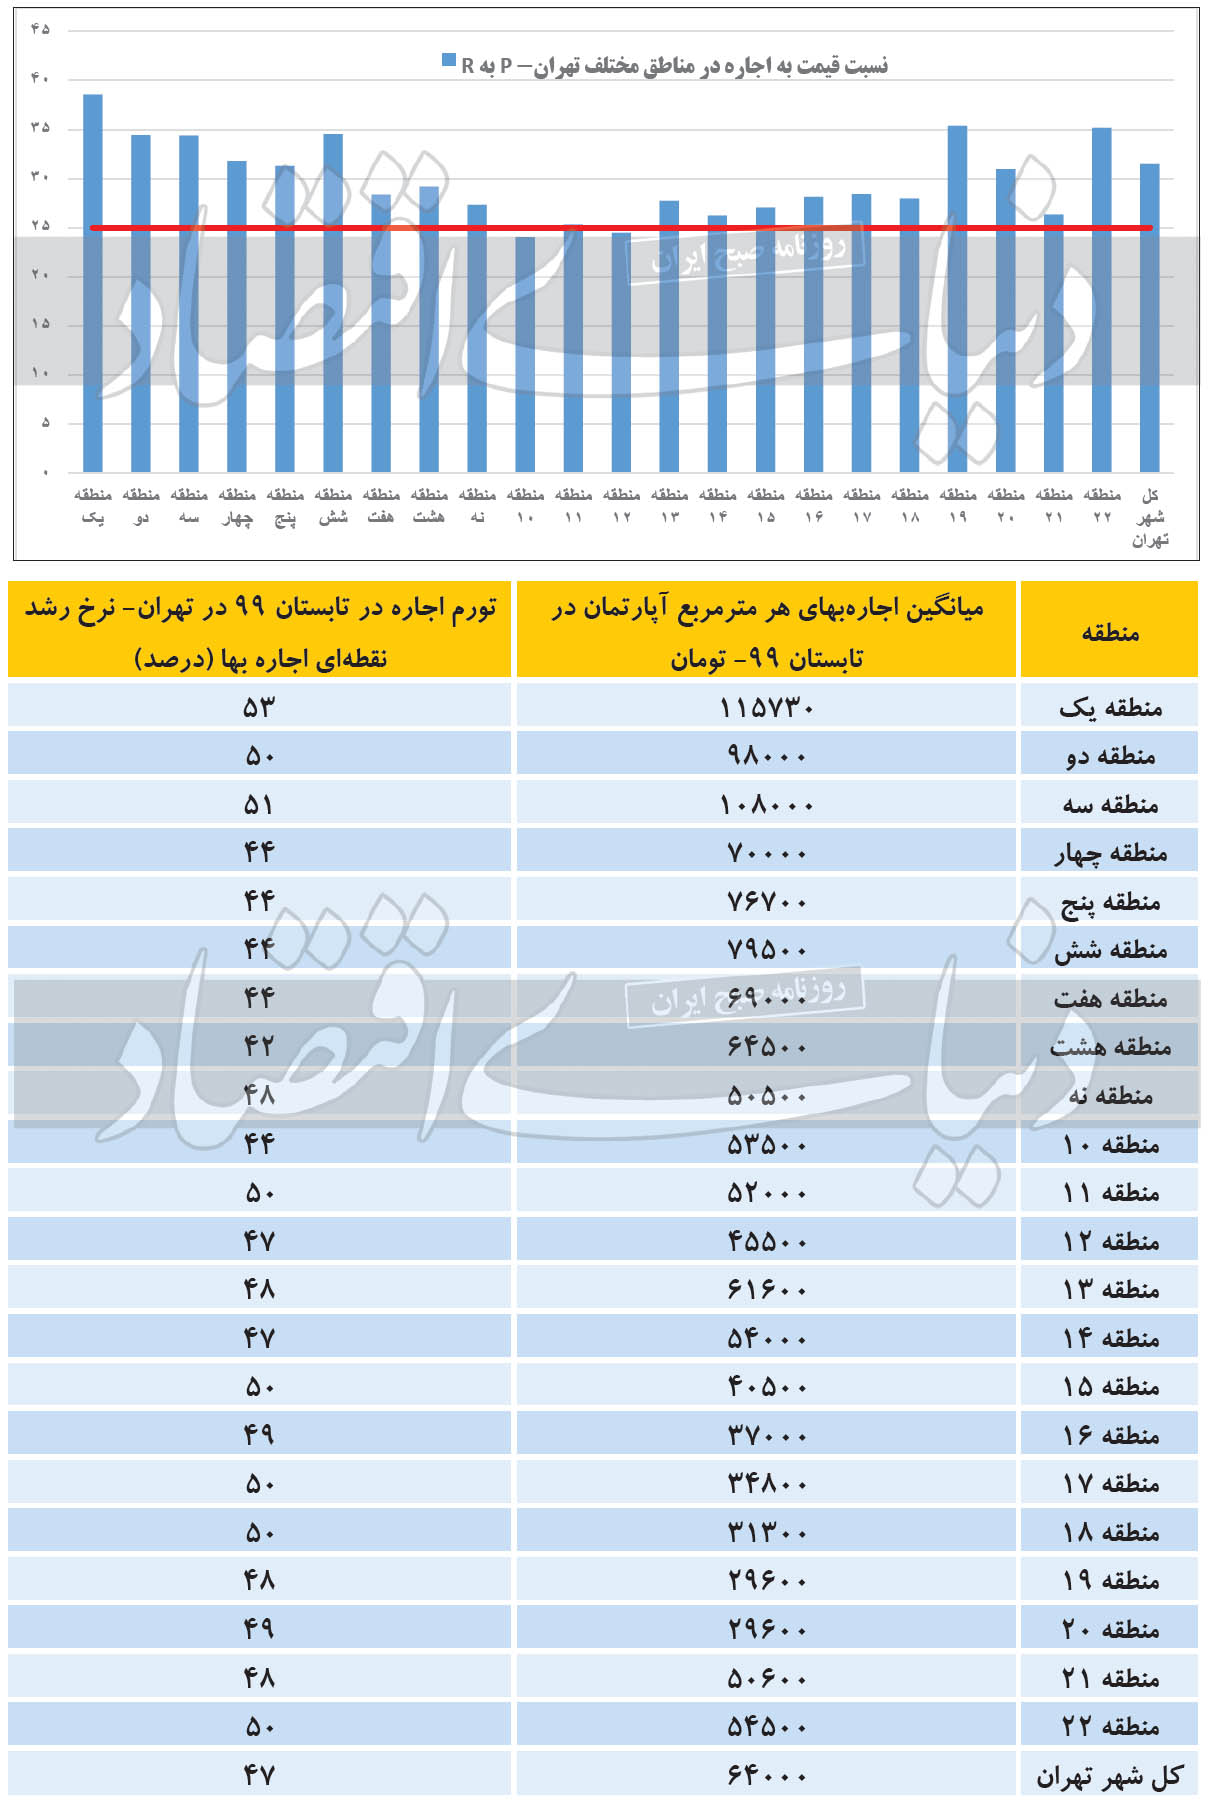 بازار مسکن مناطق ۲۲ گانه تهران در تابستان ۹۹